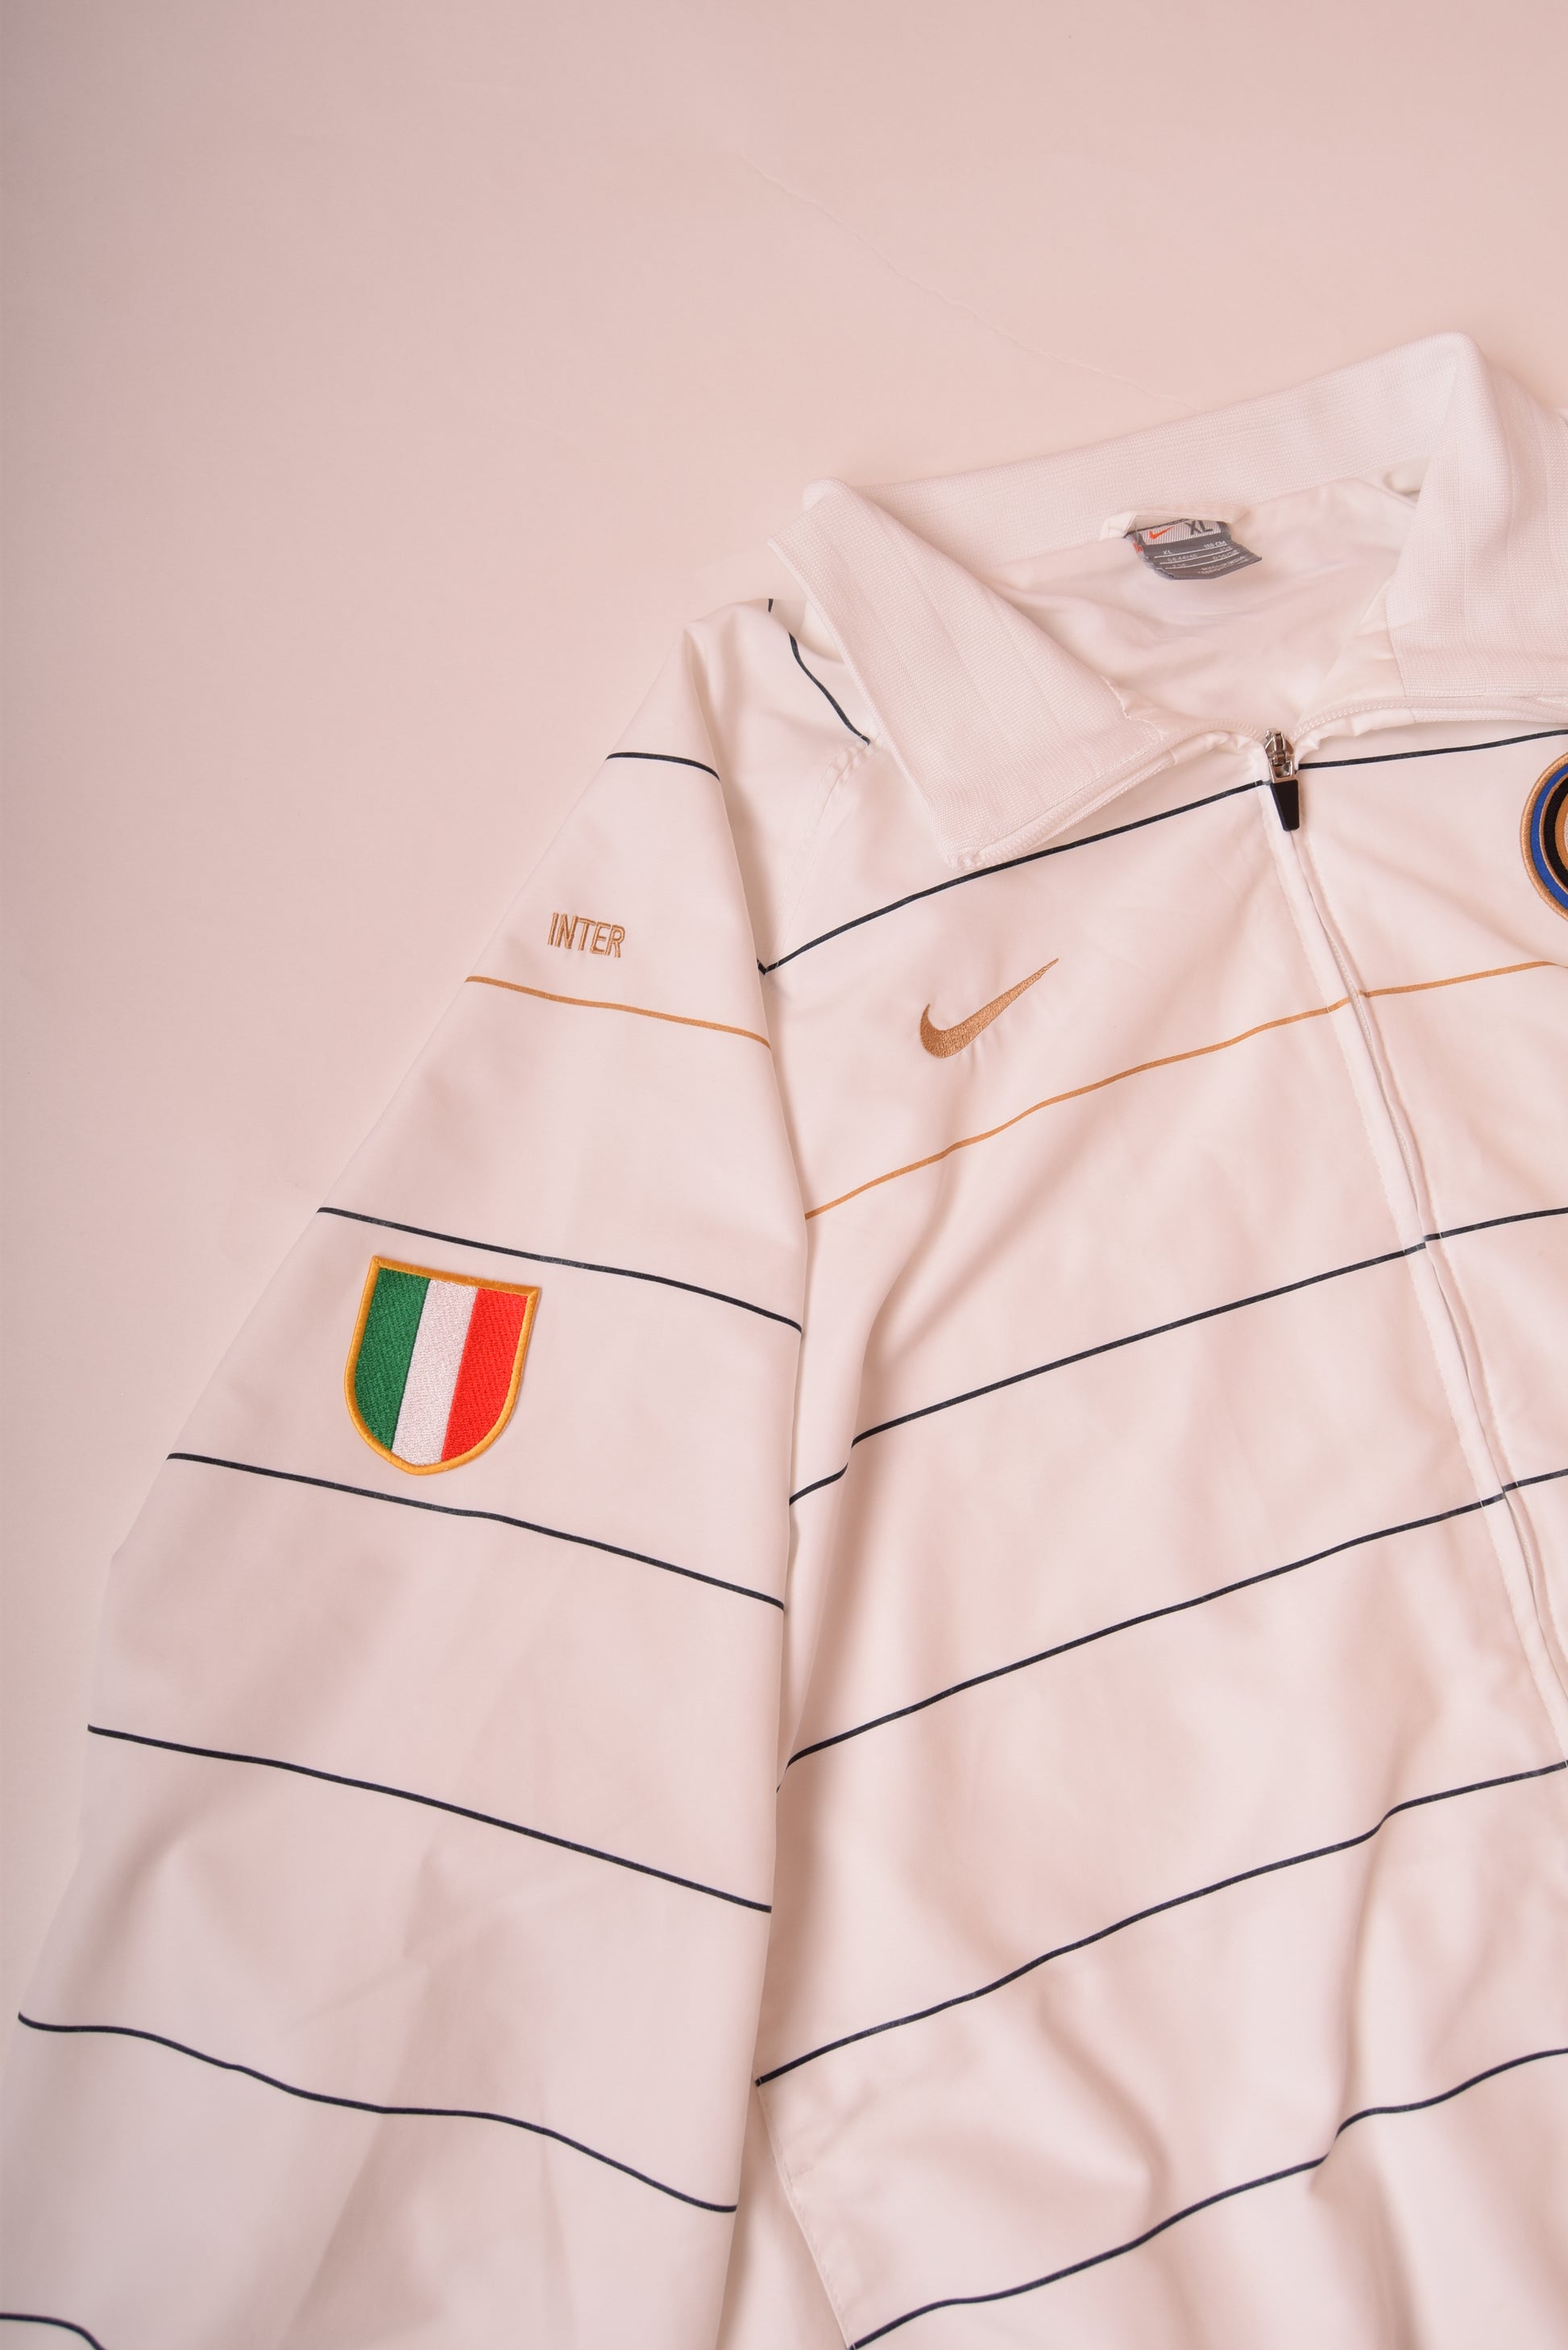 Nike Inter Milano '08-'09 Jacket